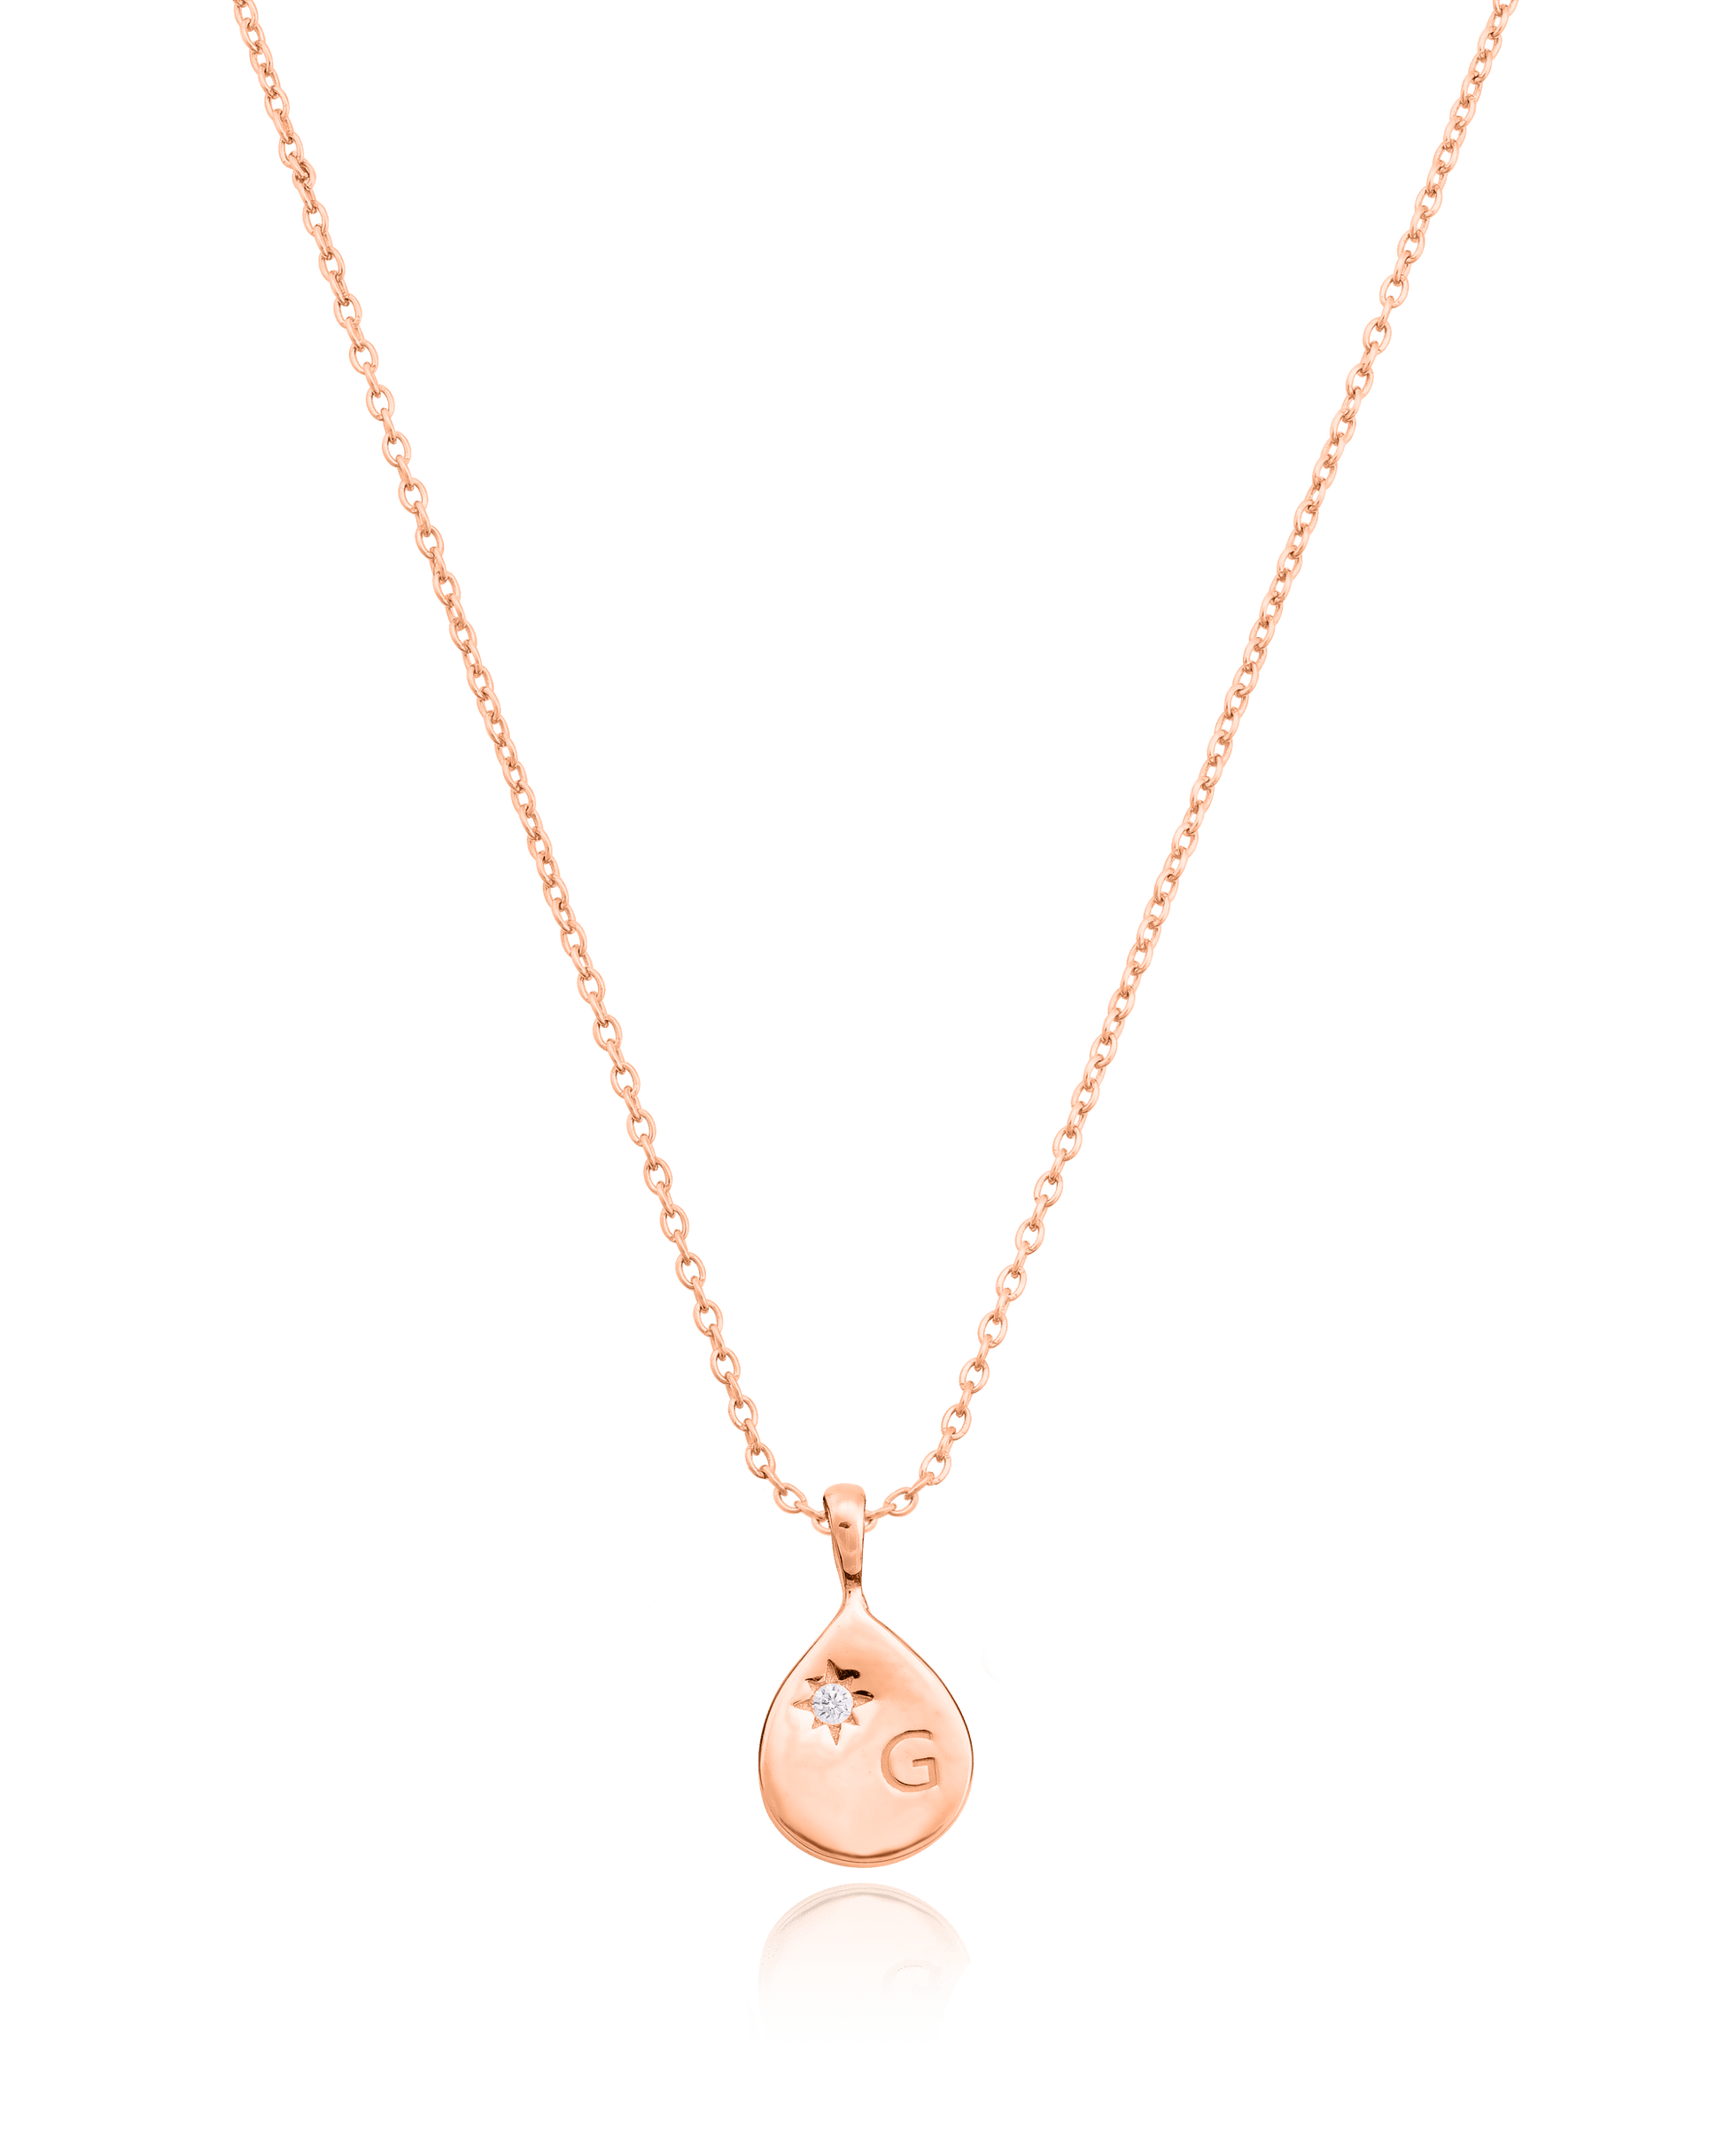 Diamond Drop Initial Necklace - 18K Rose Vermeil Necklaces magal-dev 1 Drop 16”+2” extender 